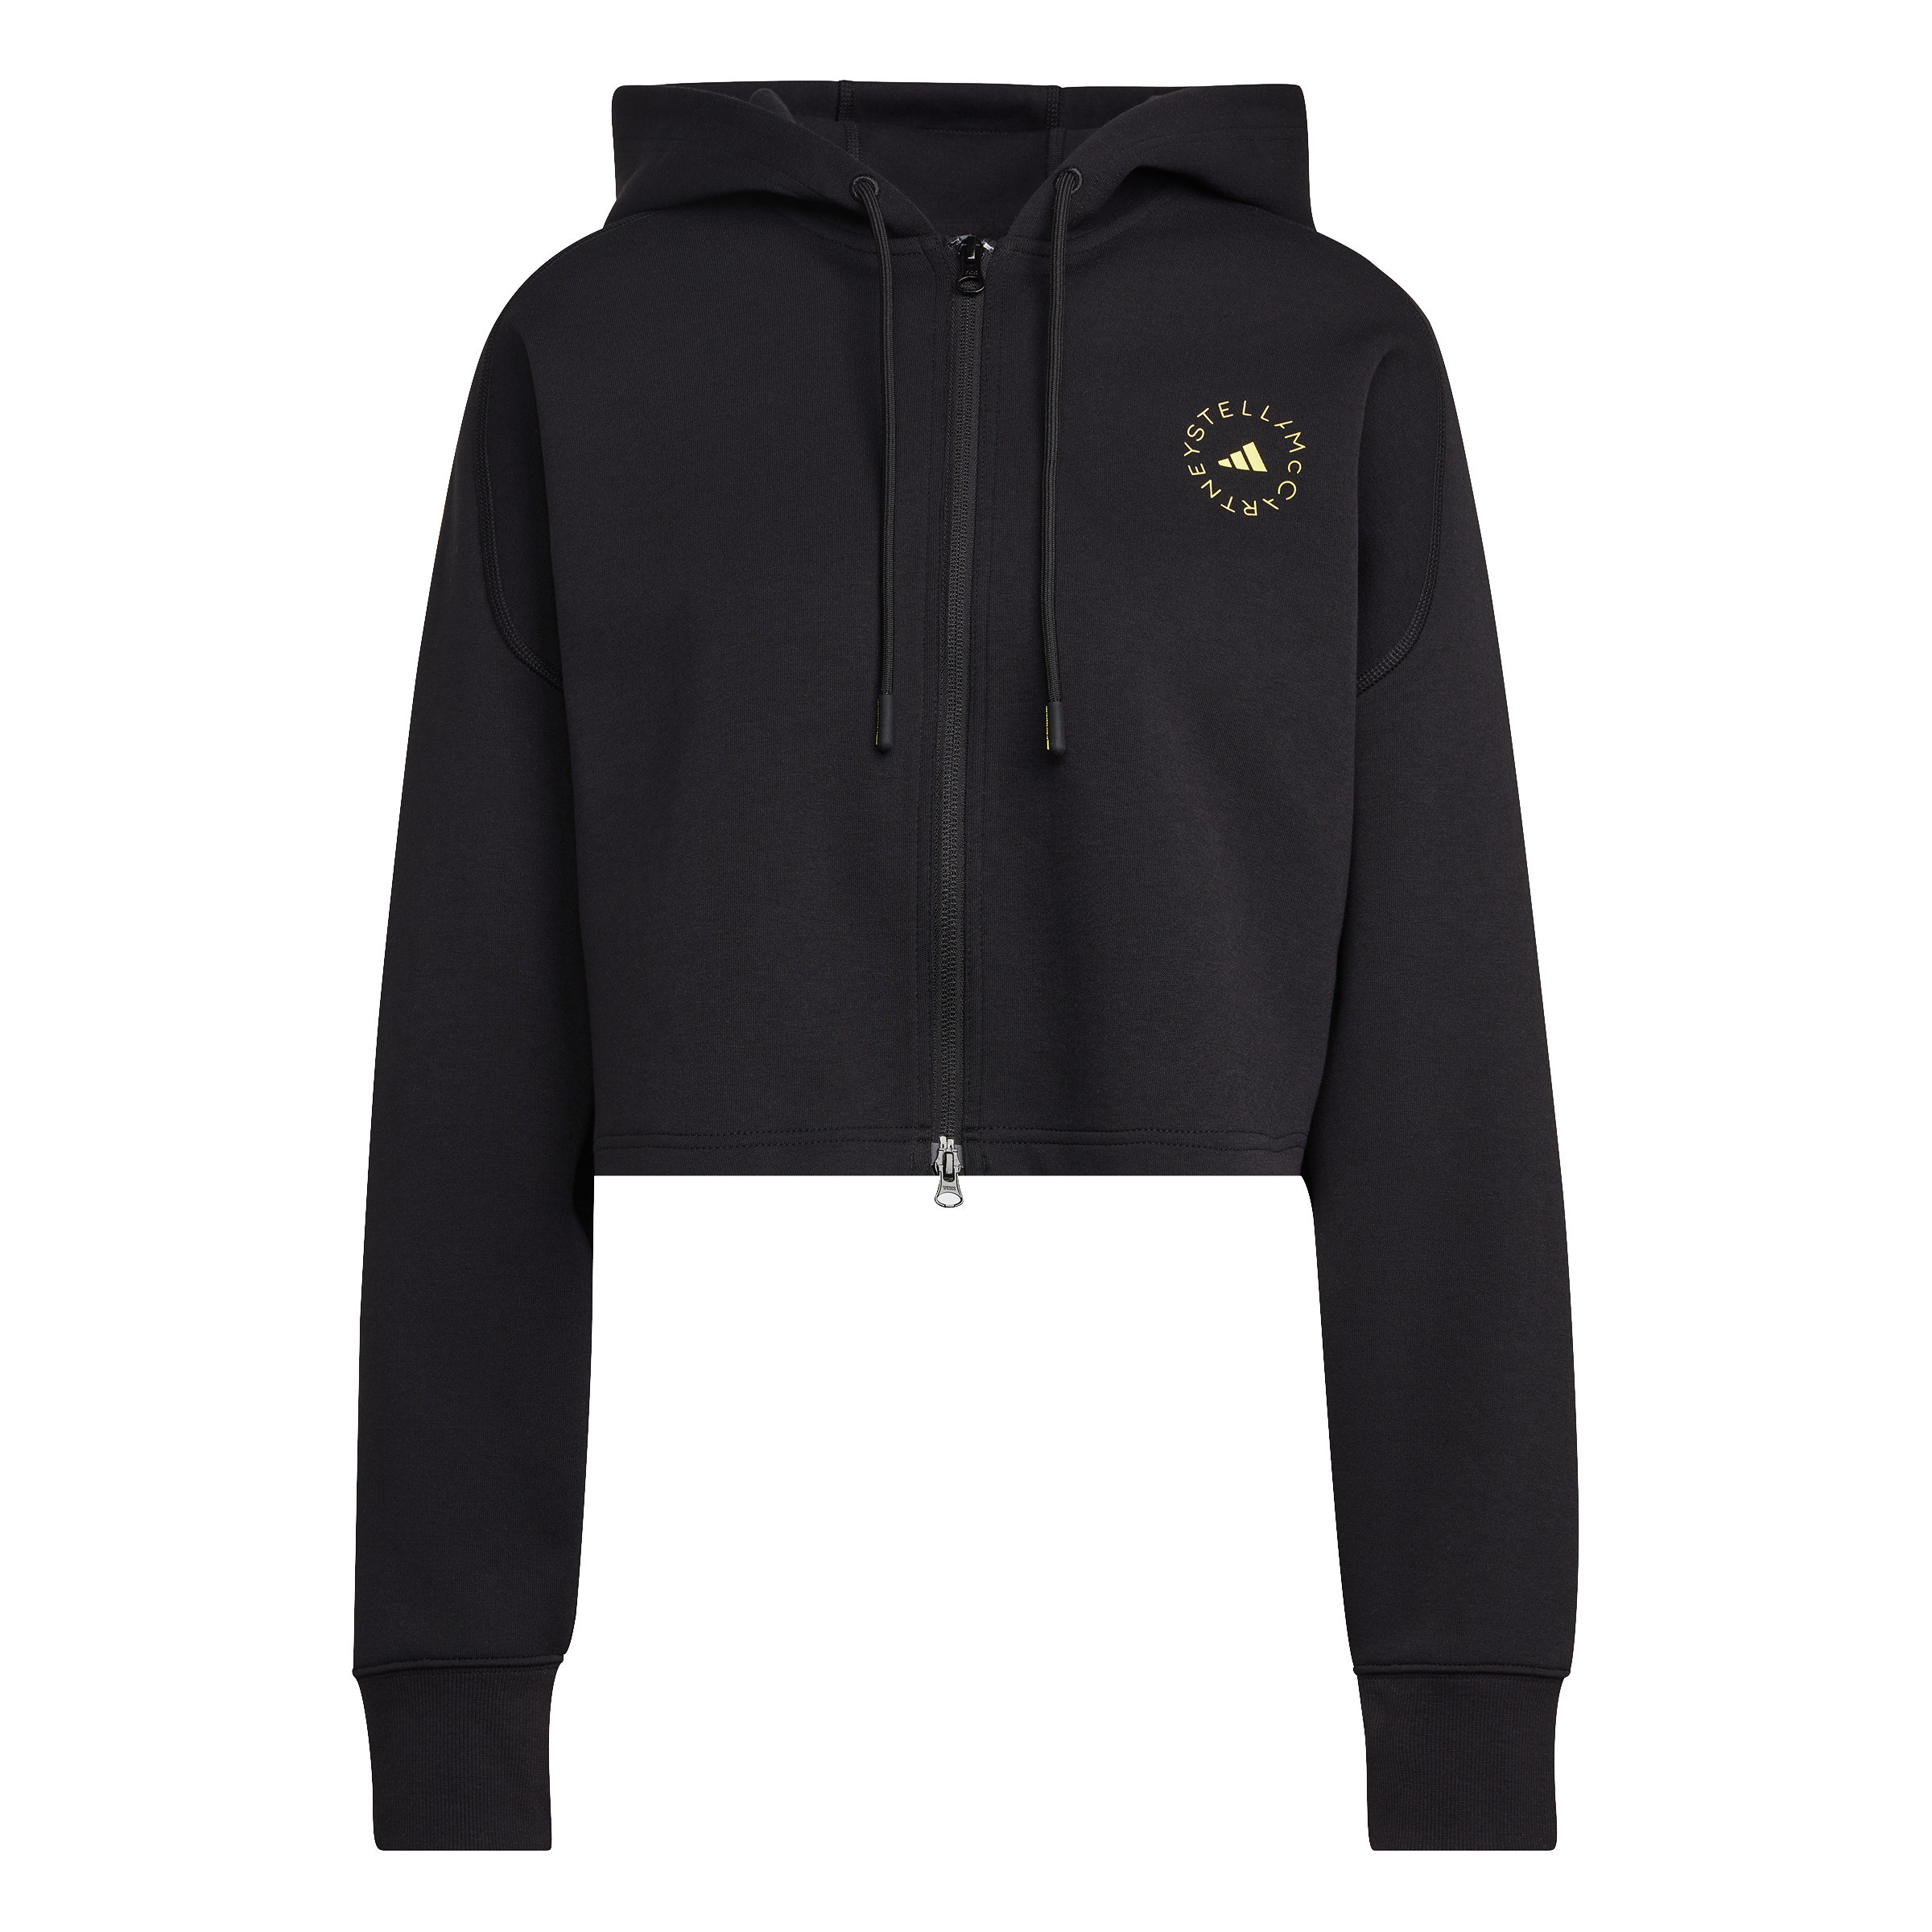 Adidas by Stella McCartney - Cropped hoodie, Black, large image number 0